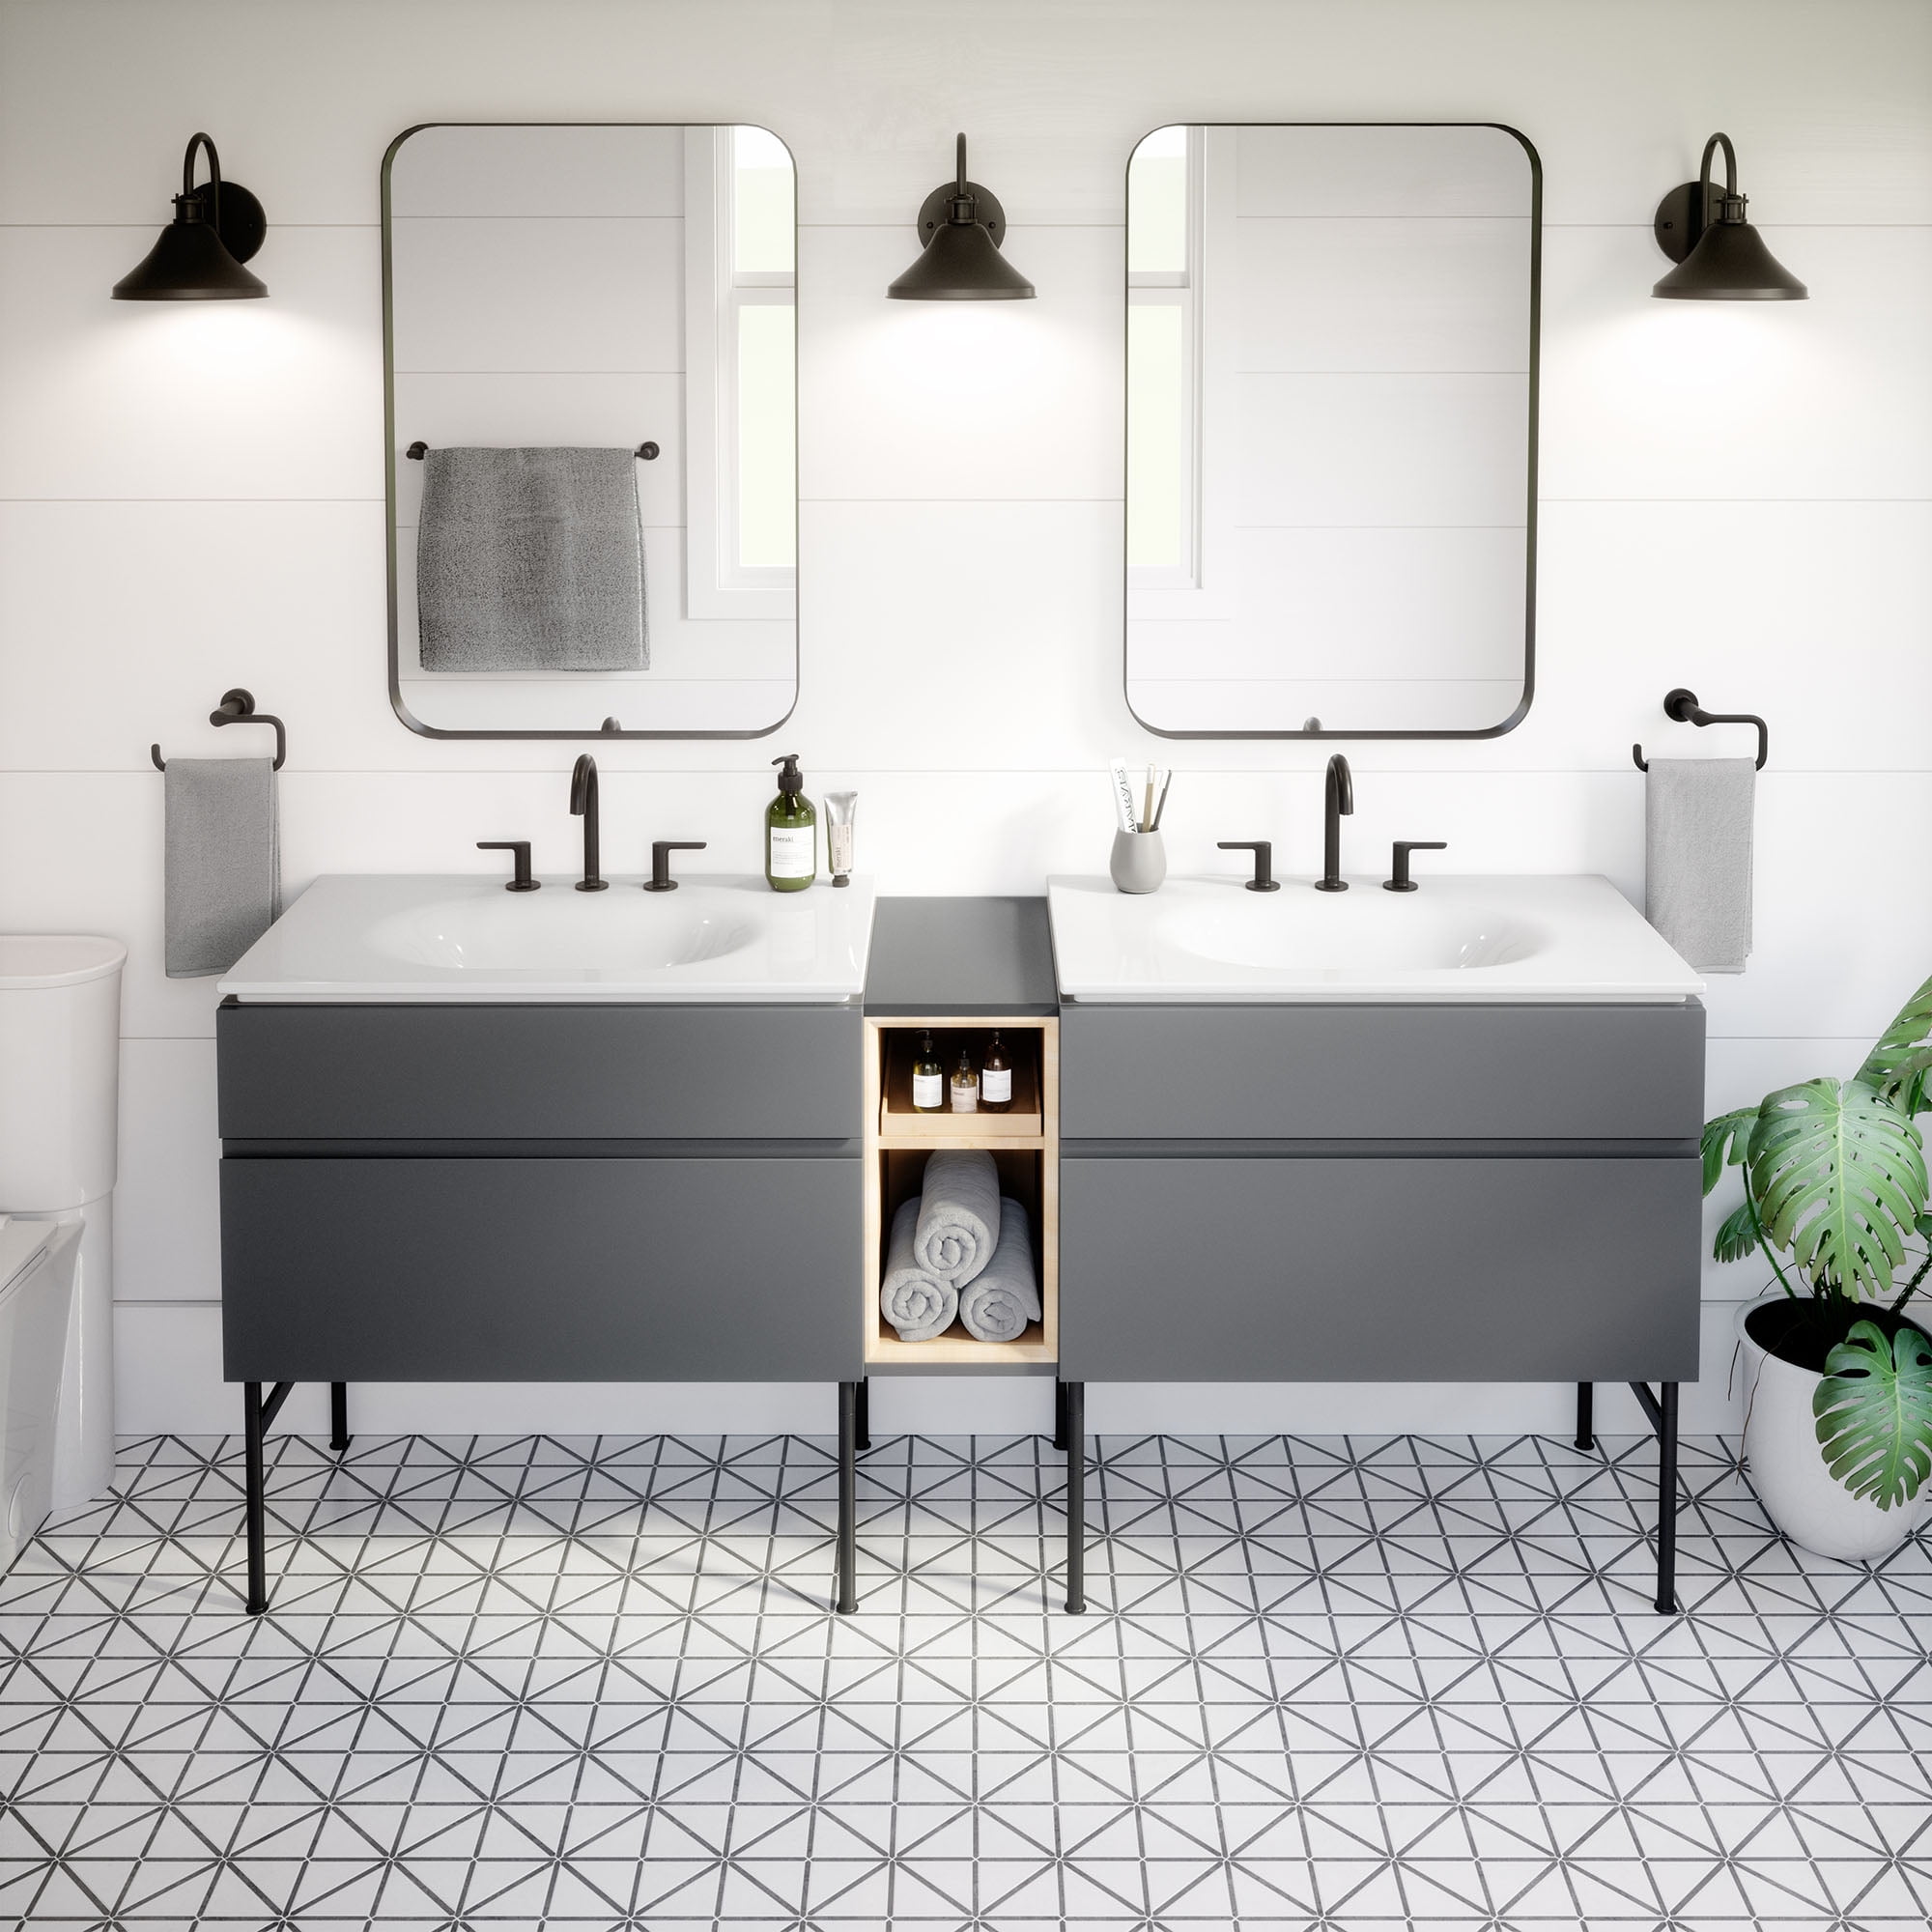 Bathroom Vanity Sink Top, American Standard Studio Vanity Basin